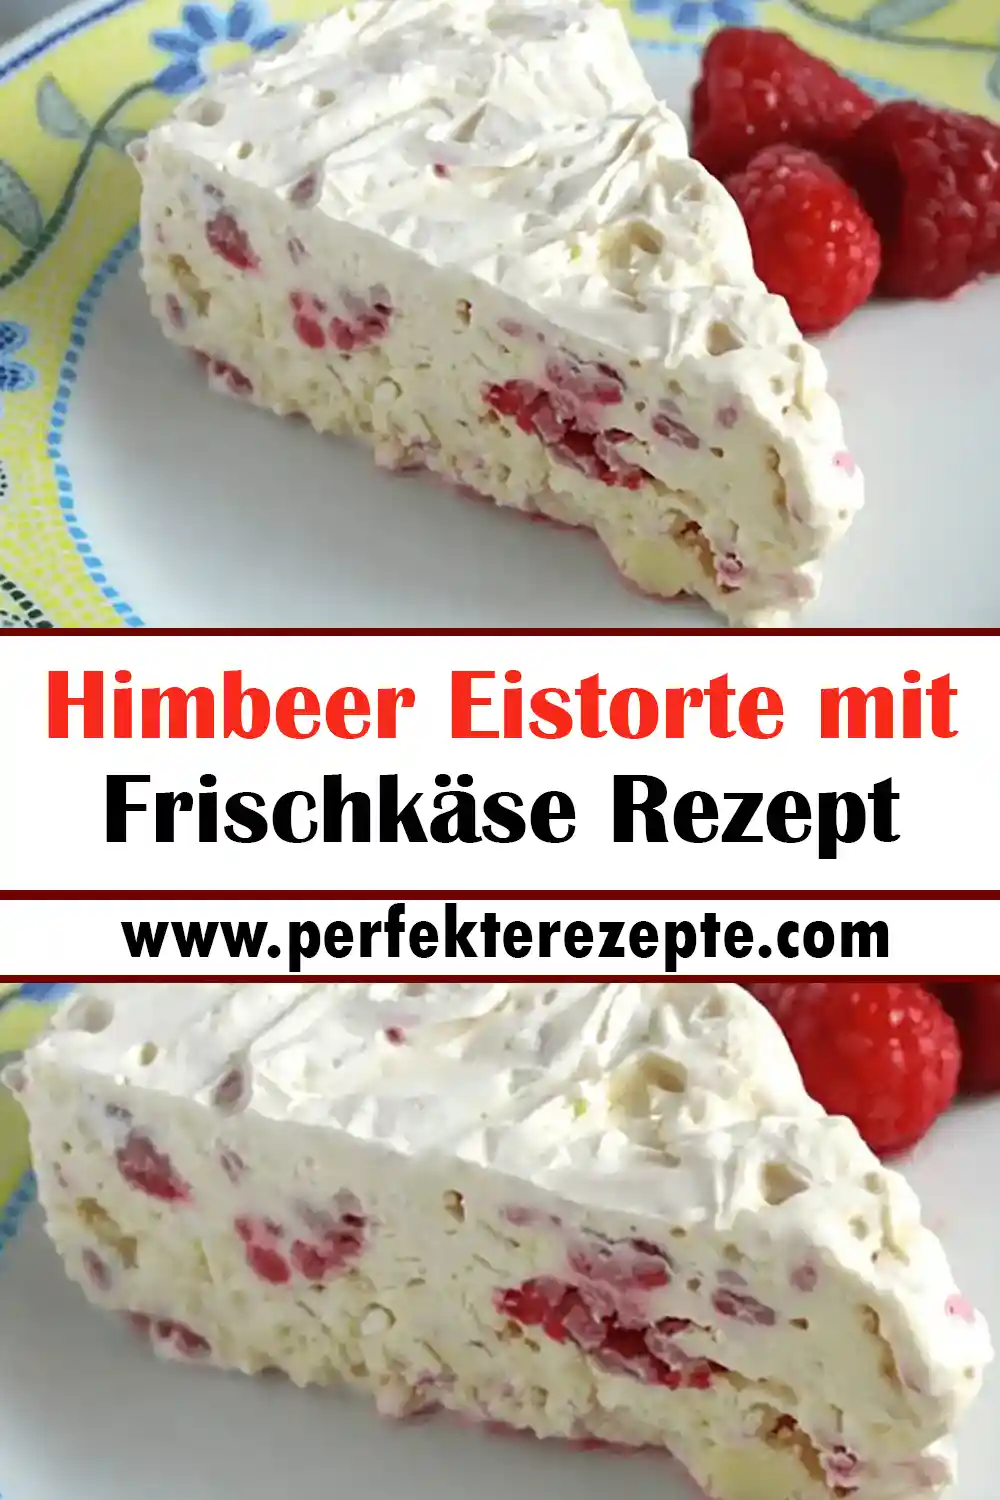 Himbeer Eistorte mit Frischkäse Rezept, herrlich erfrischend!